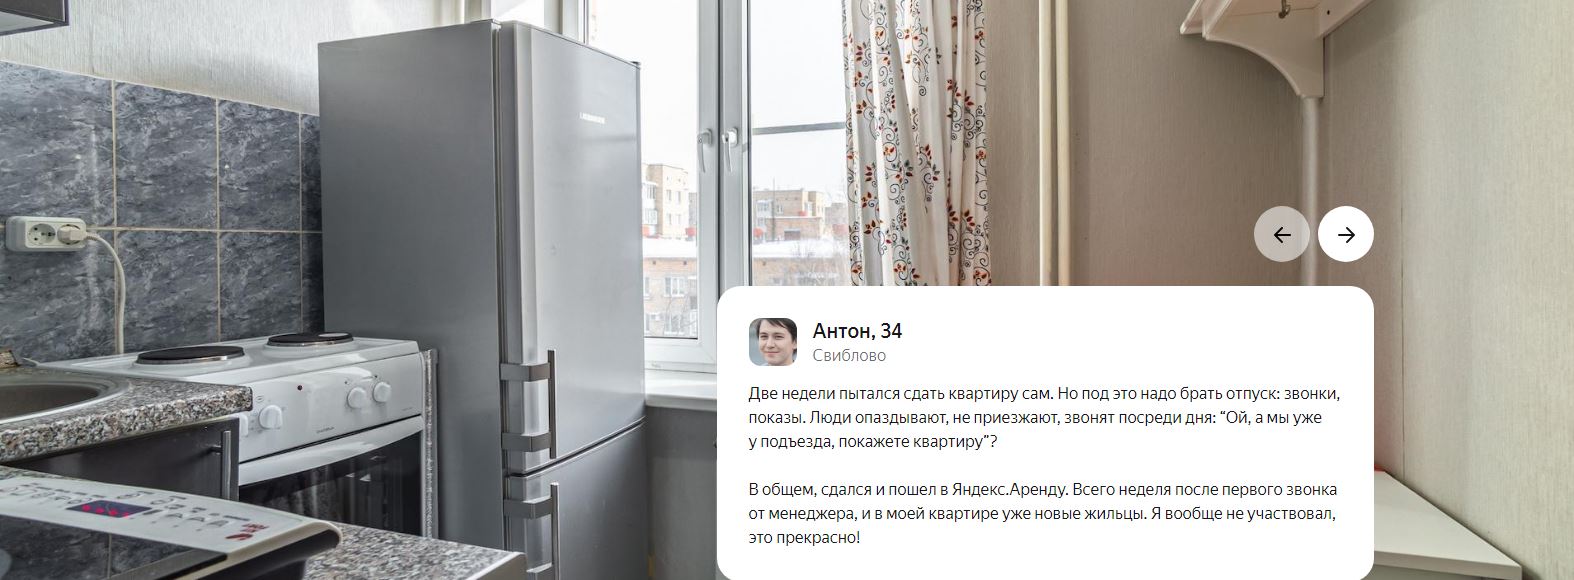 Как работает Яндекс Аренда? Преимущества для собственников квартир